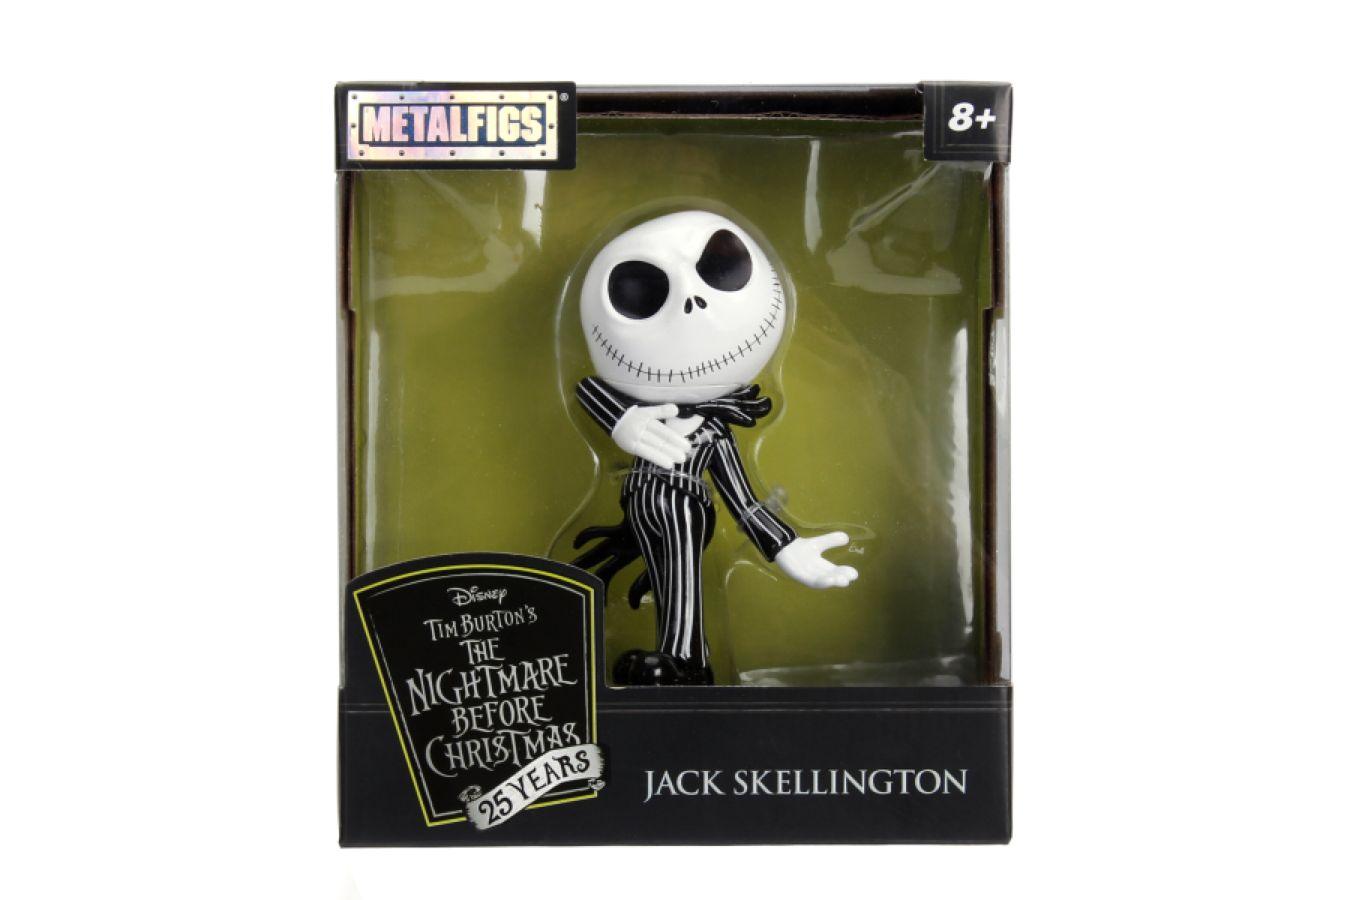 JAD32351 The Nightmare Before Christmas - Jack Skellington Glow-in-the-dark 4" Diecast MetalFig - Jada Toys - Titan Pop Culture